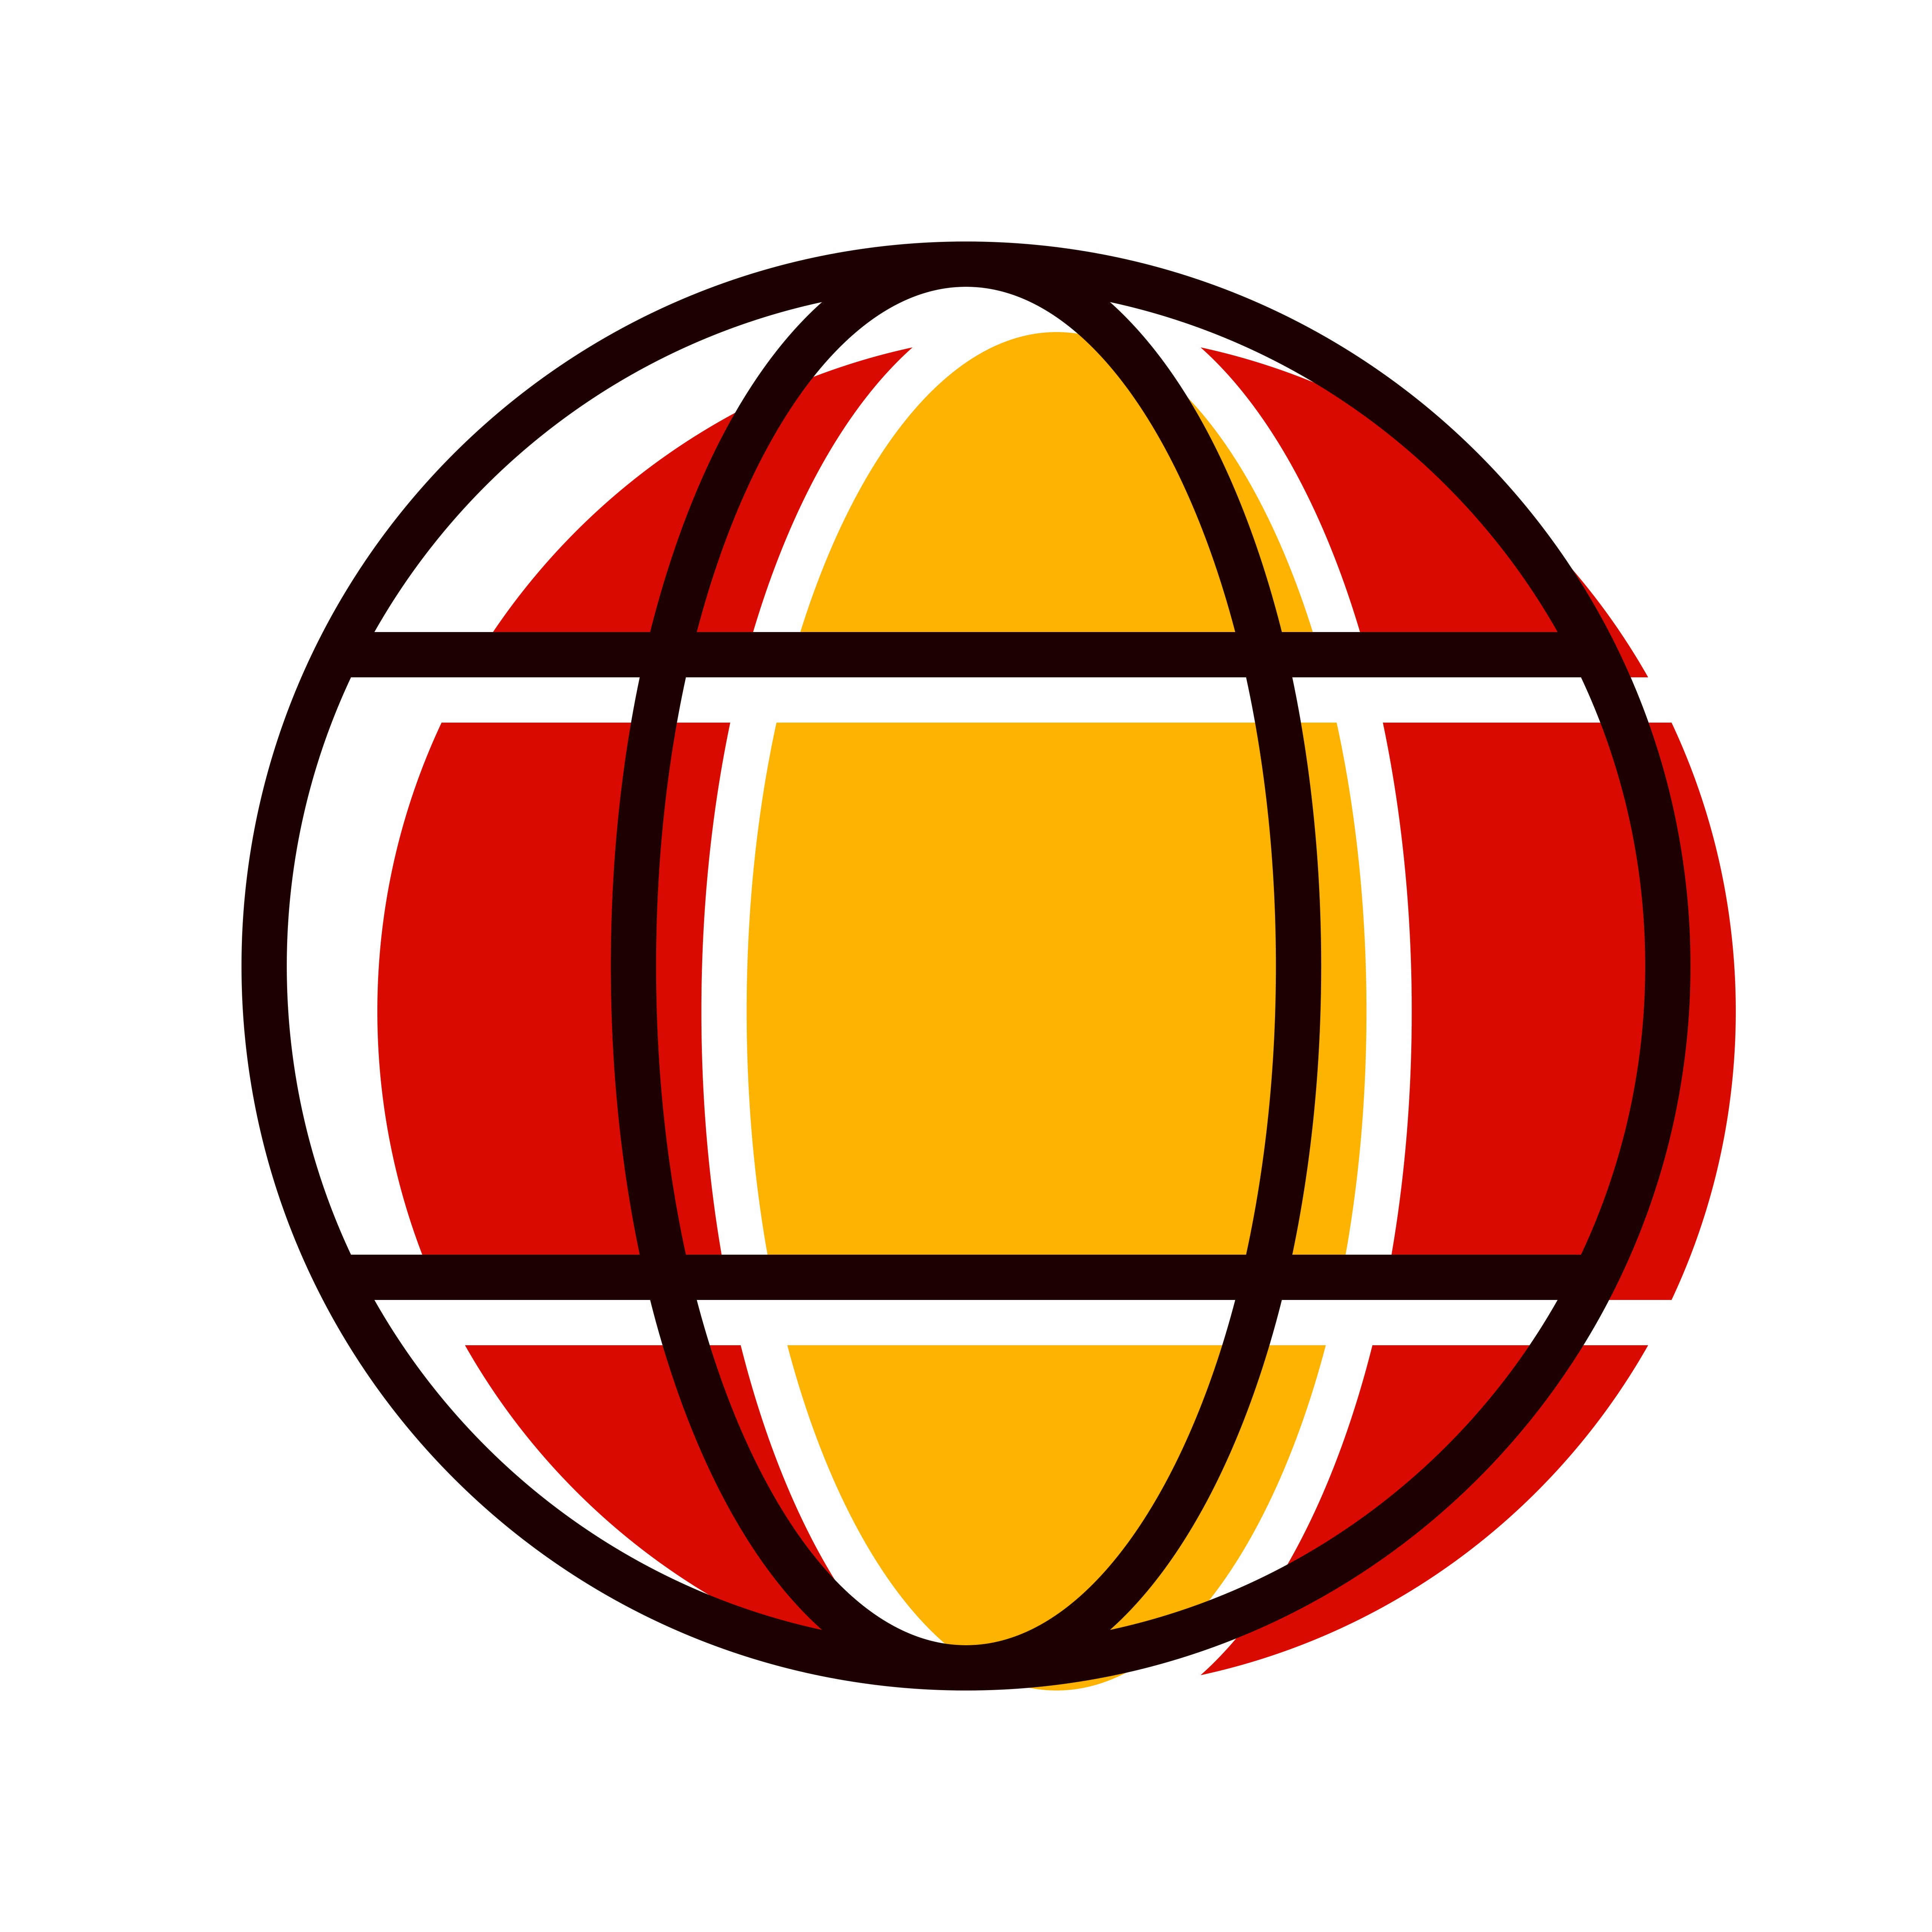 Download Globe Icon Design - Download Free Vectors, Clipart ...